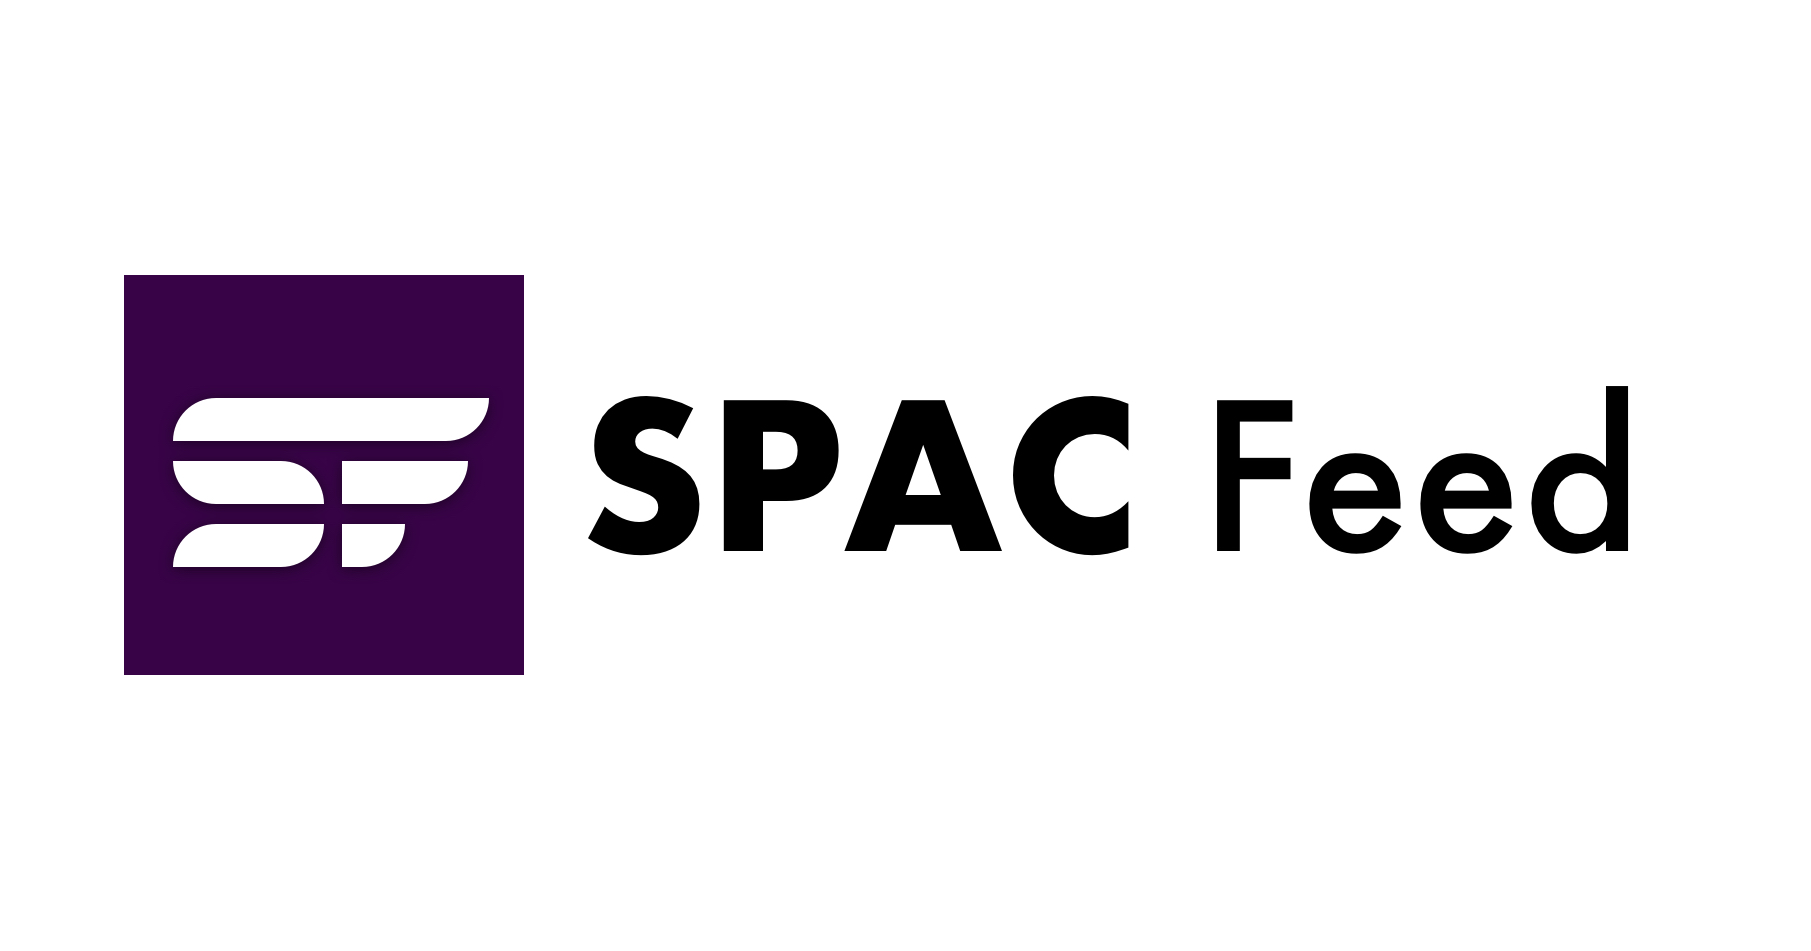 Districtul de Sud al New Yorkului respinge acțiunea colectivă presupusă care decurge din fuziunea SPAC, susținând că reclamanții nu aveau statut